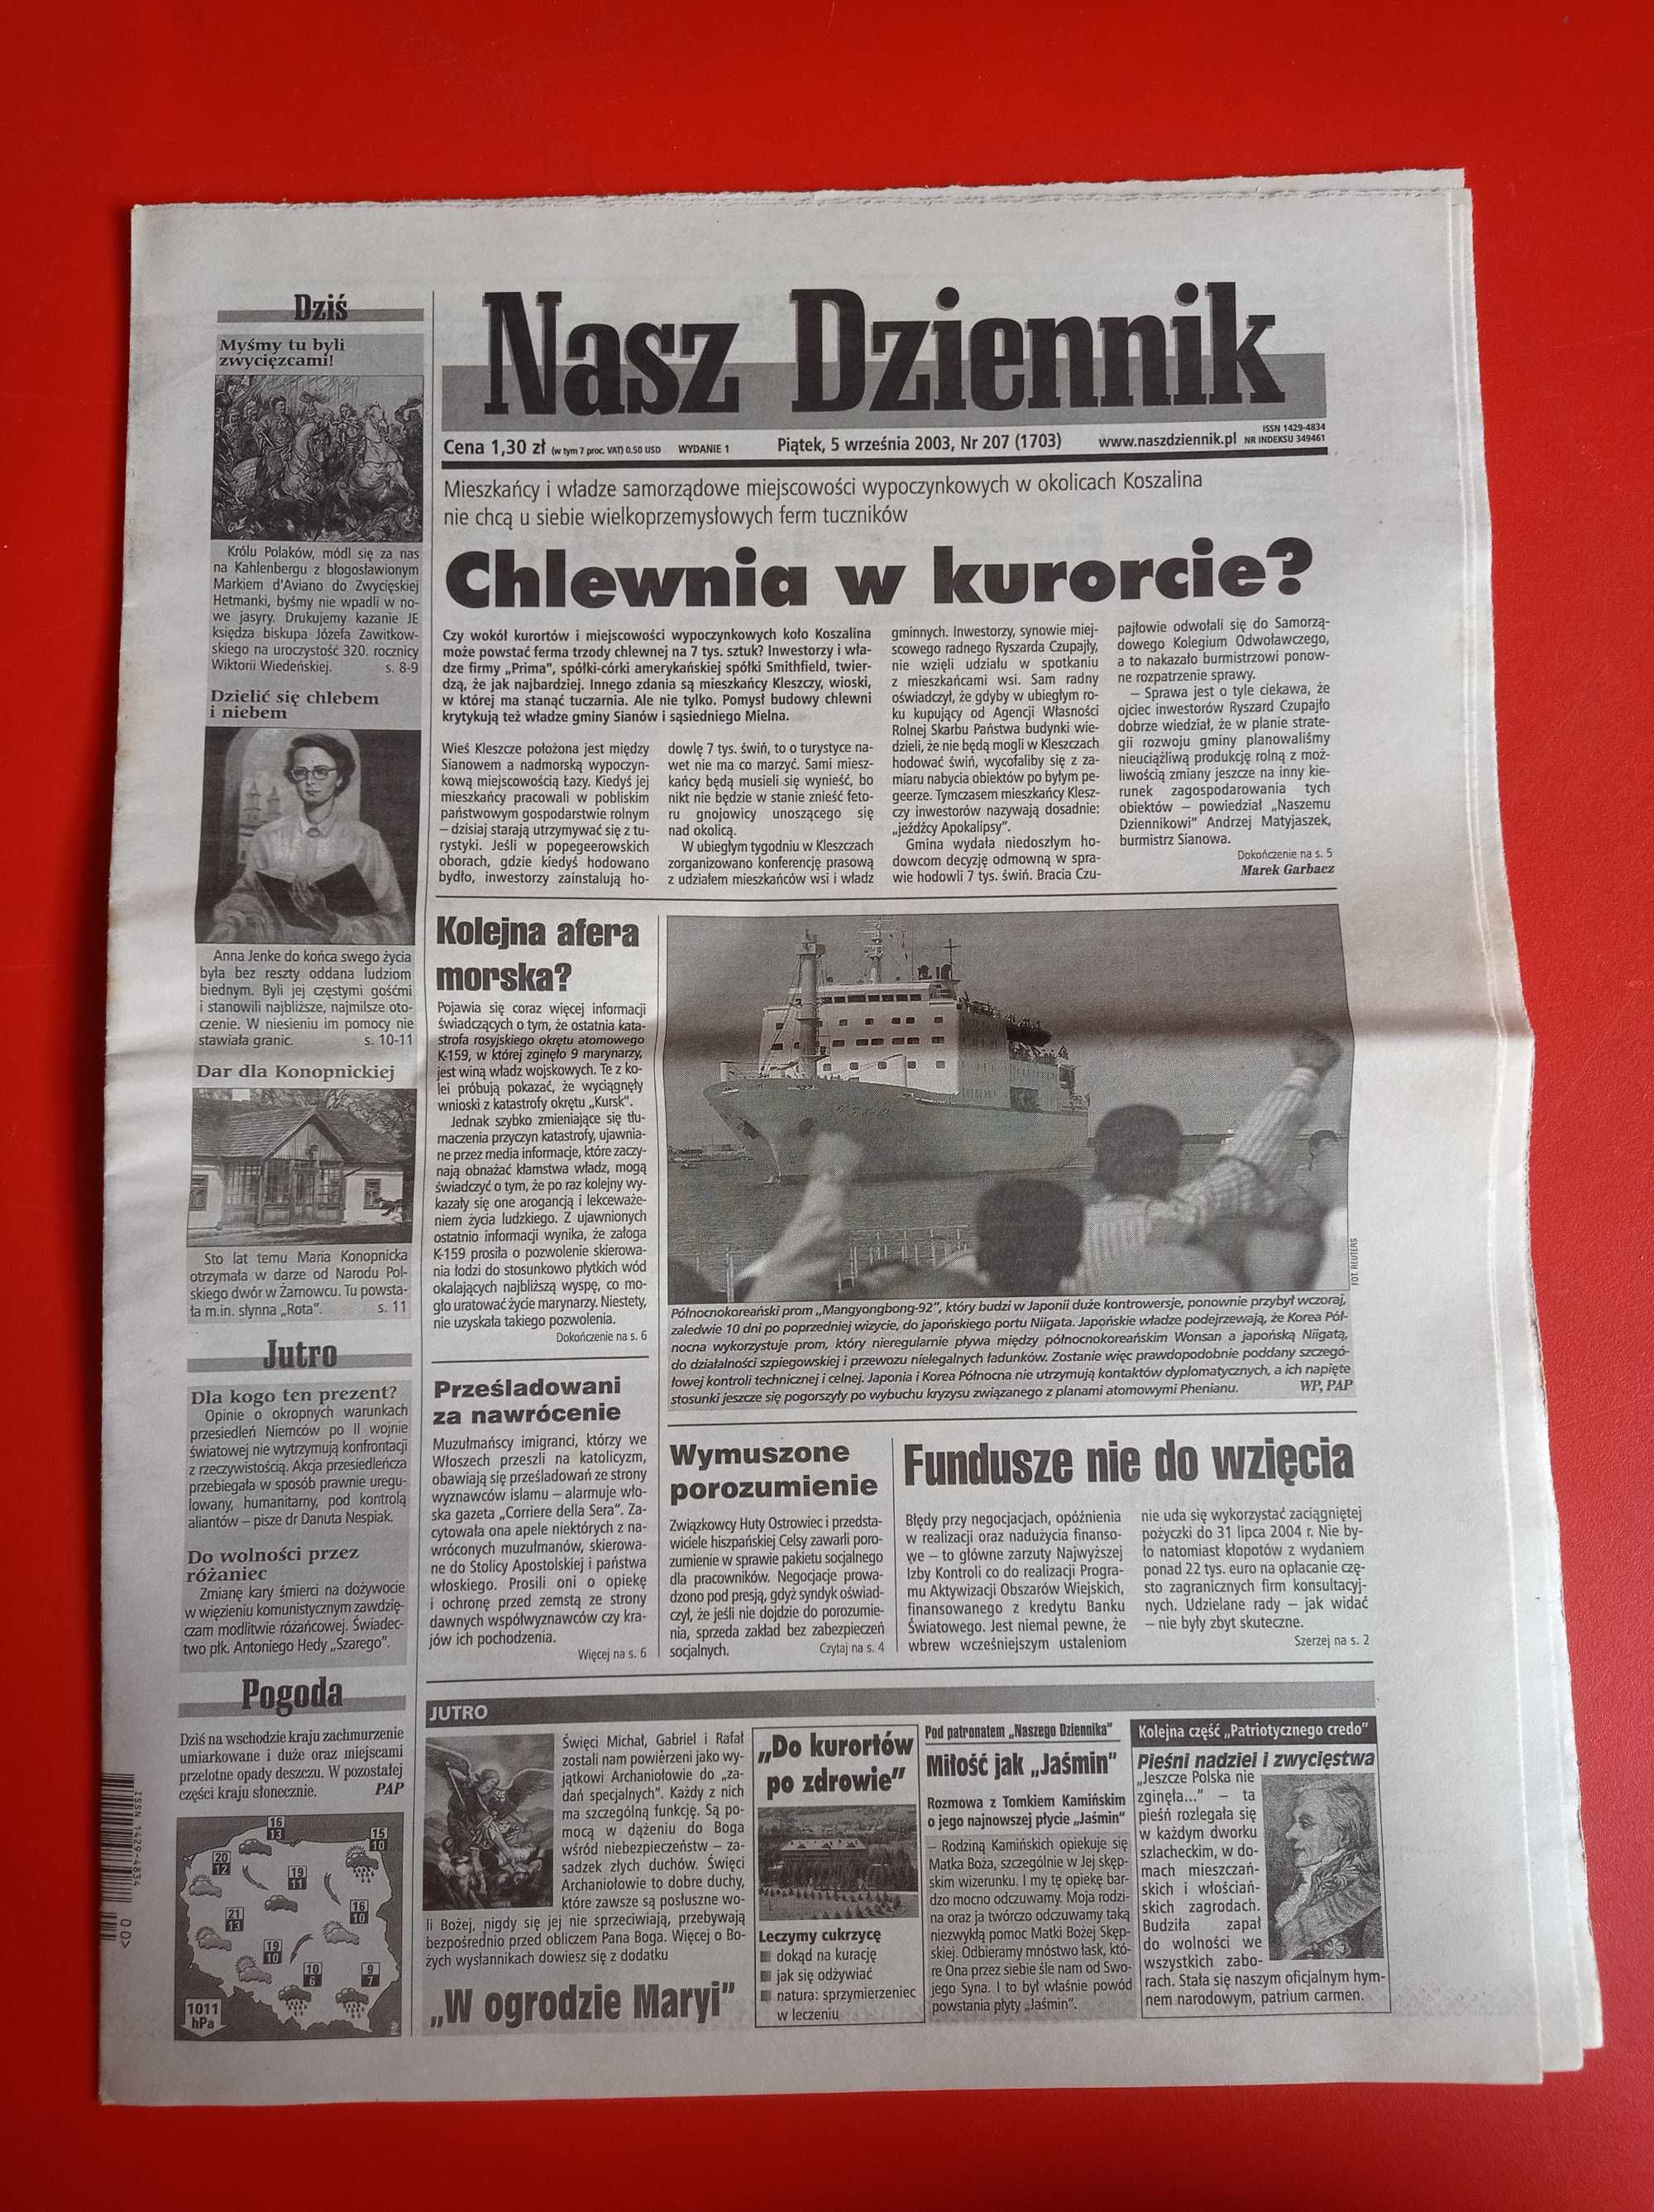 Nasz Dziennik, nr 207/2003, 5 września 2003